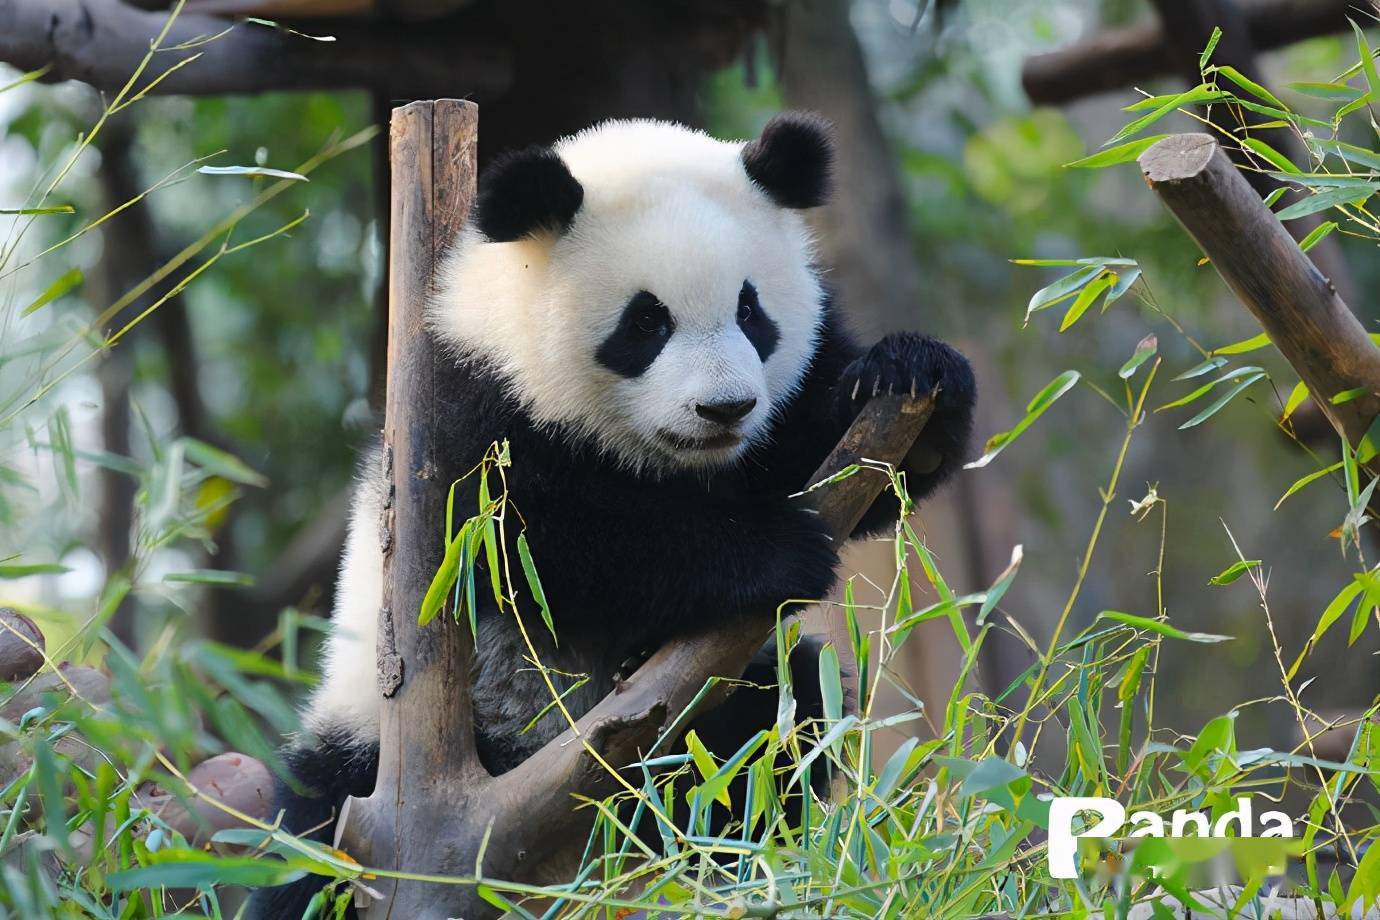 有真正的熊猫可以撸但至少熊猫壁纸资源充足嘛(看熊猫微信编辑部整理